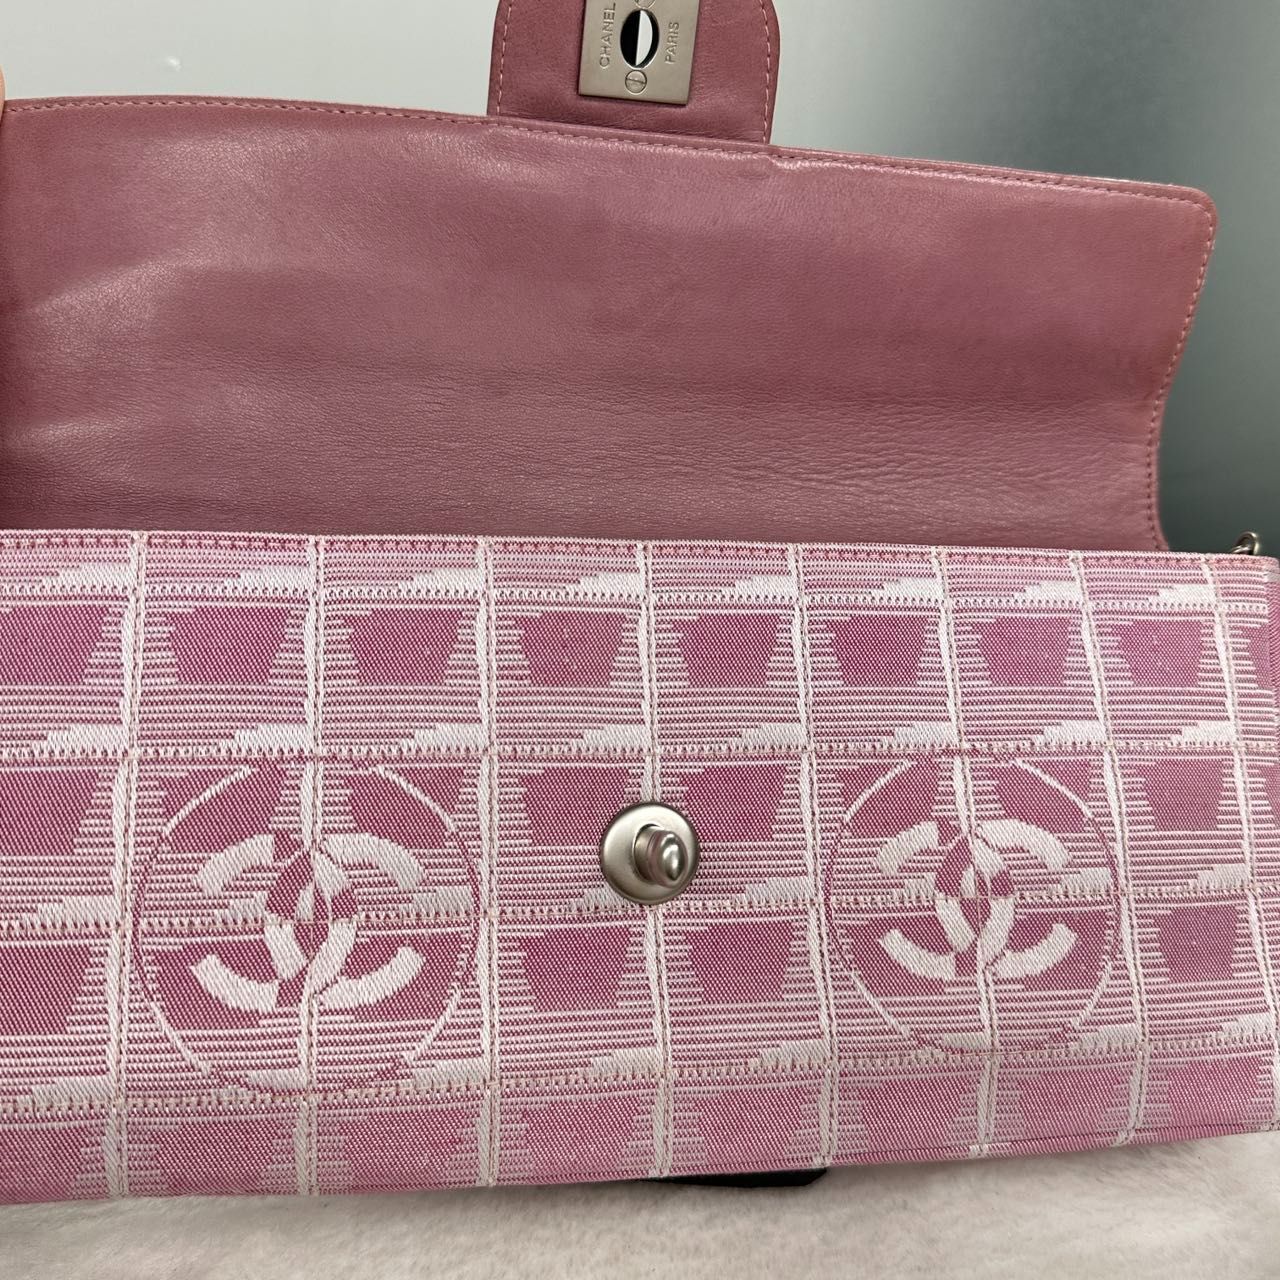 シャネル ニュートラベルライン チェーンショルダーバッグ ハンドバッグ 肩がけ クラッチ パーティ CHANEL 6番台 ピンク pink キャンバス ココマーク  chain shoulder bag coco logo